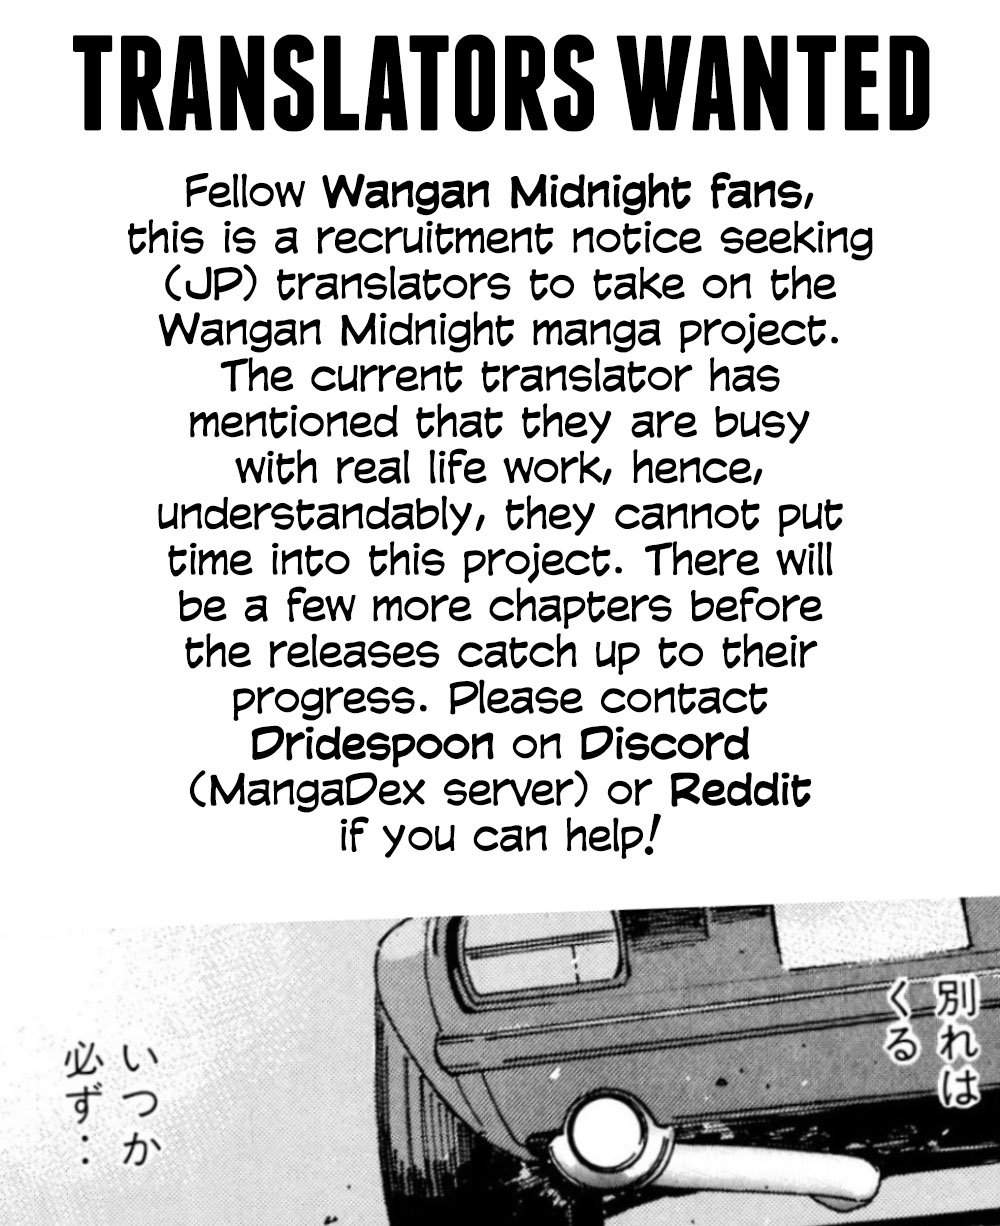 Wangan Midnight - Page 1